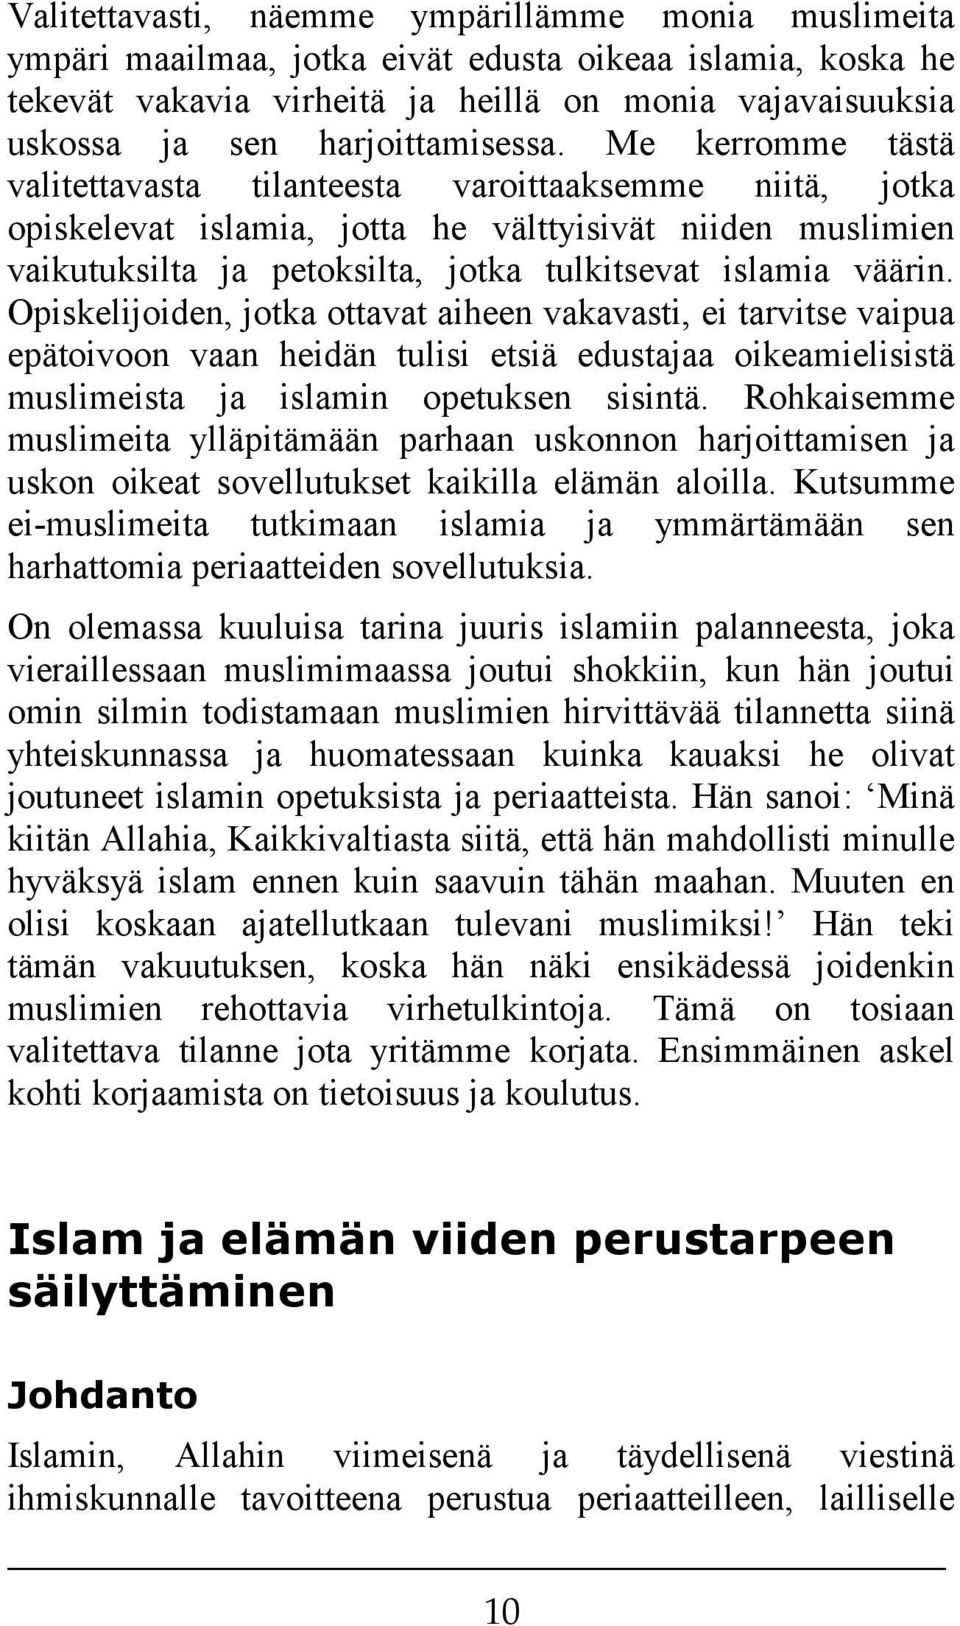 Me kerromme tästä valitettavasta tilanteesta varoittaaksemme niitä, jotka opiskelevat islamia, jotta he välttyisivät niiden muslimien vaikutuksilta ja petoksilta, jotka tulkitsevat islamia väärin.